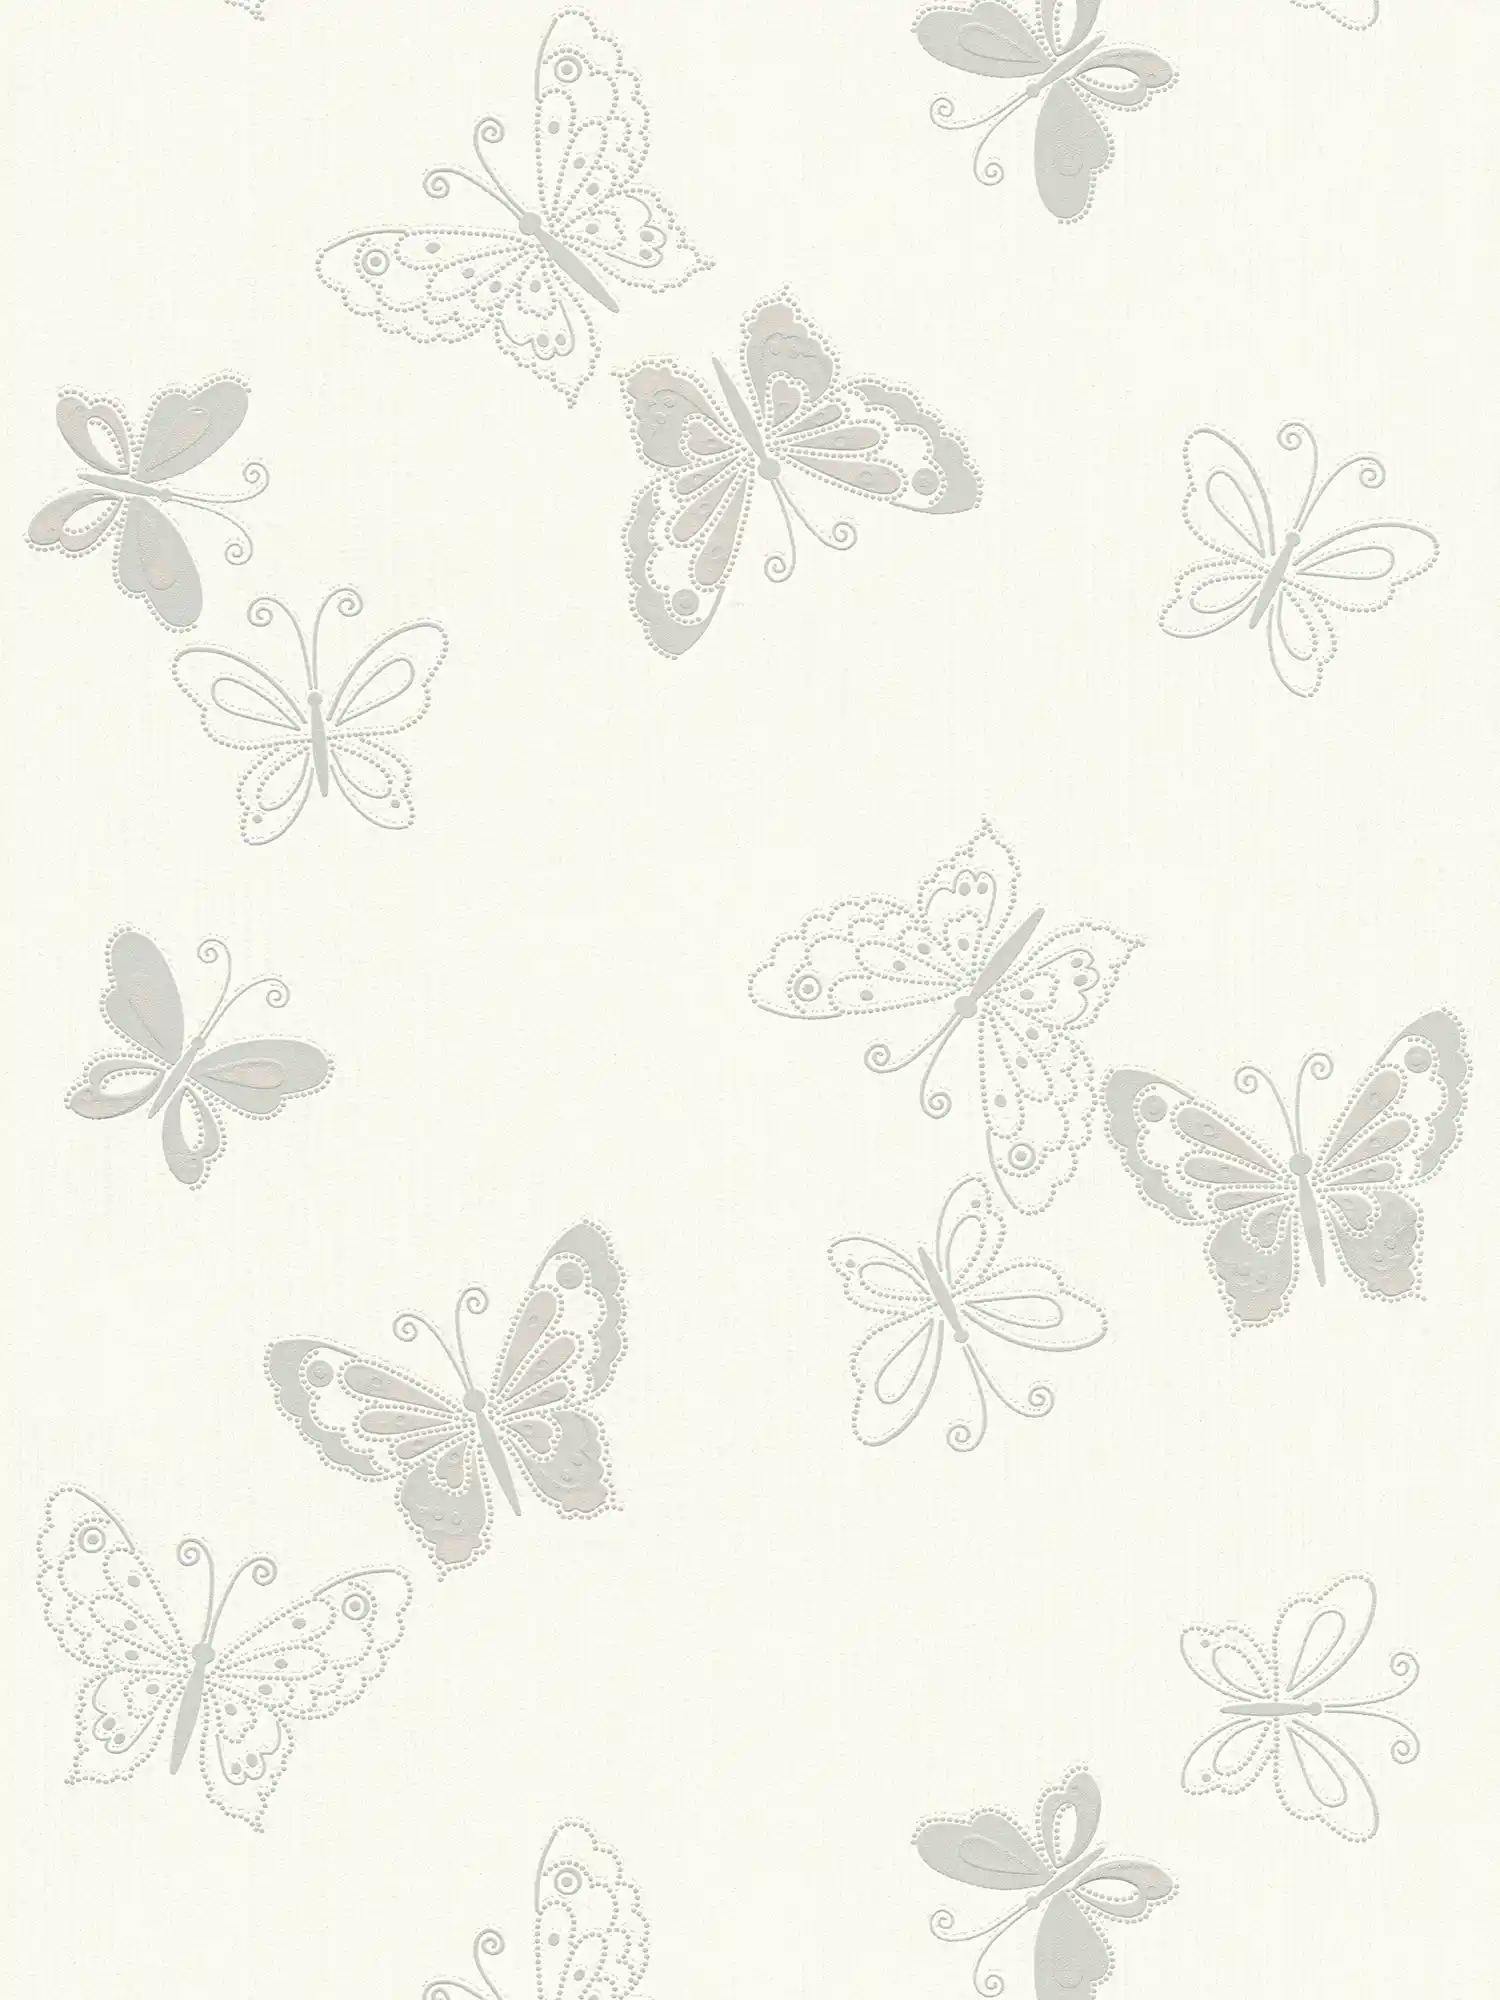 Papiers peints papillons avec effet métallique - beige, argenté
